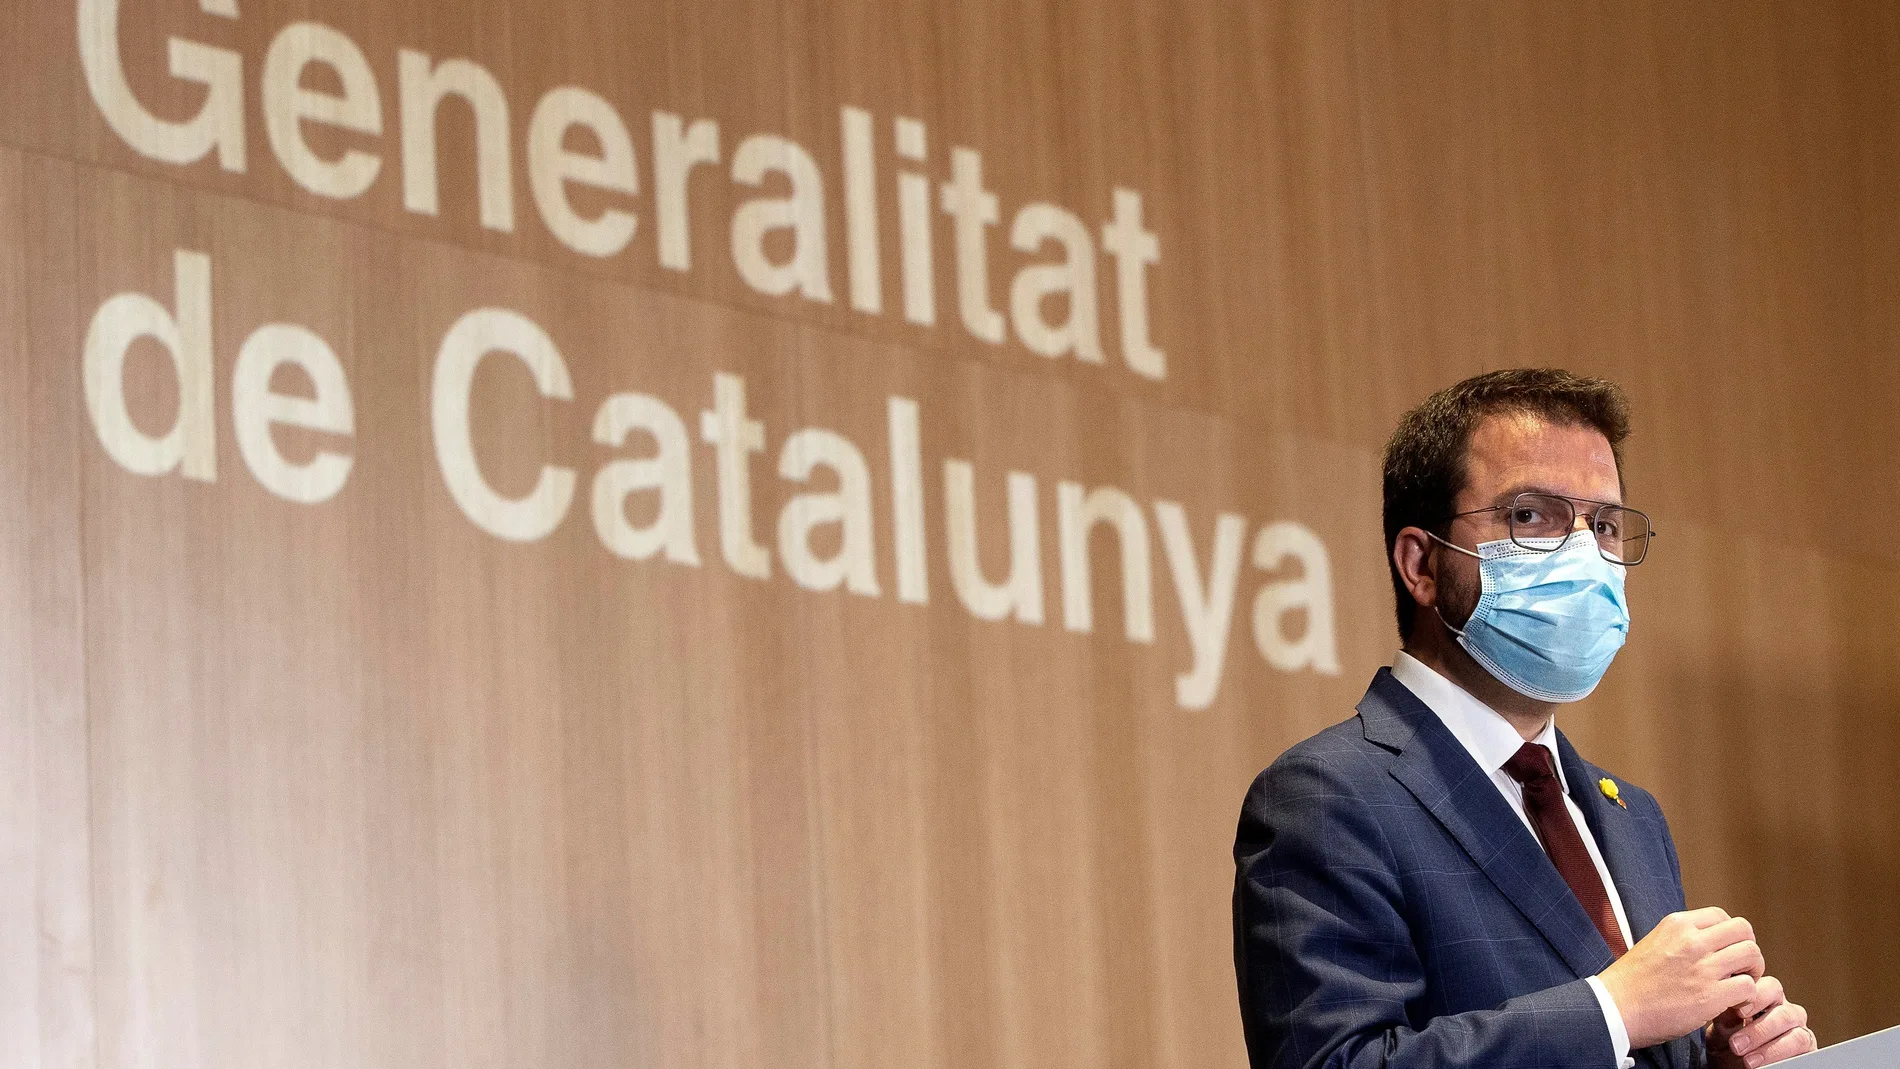 El vicepresidente de la Generalitat en funciones, Pere Aragonès, durante la rueda de prensa de presentación de la campaña de vacunación masiva en Cataluña